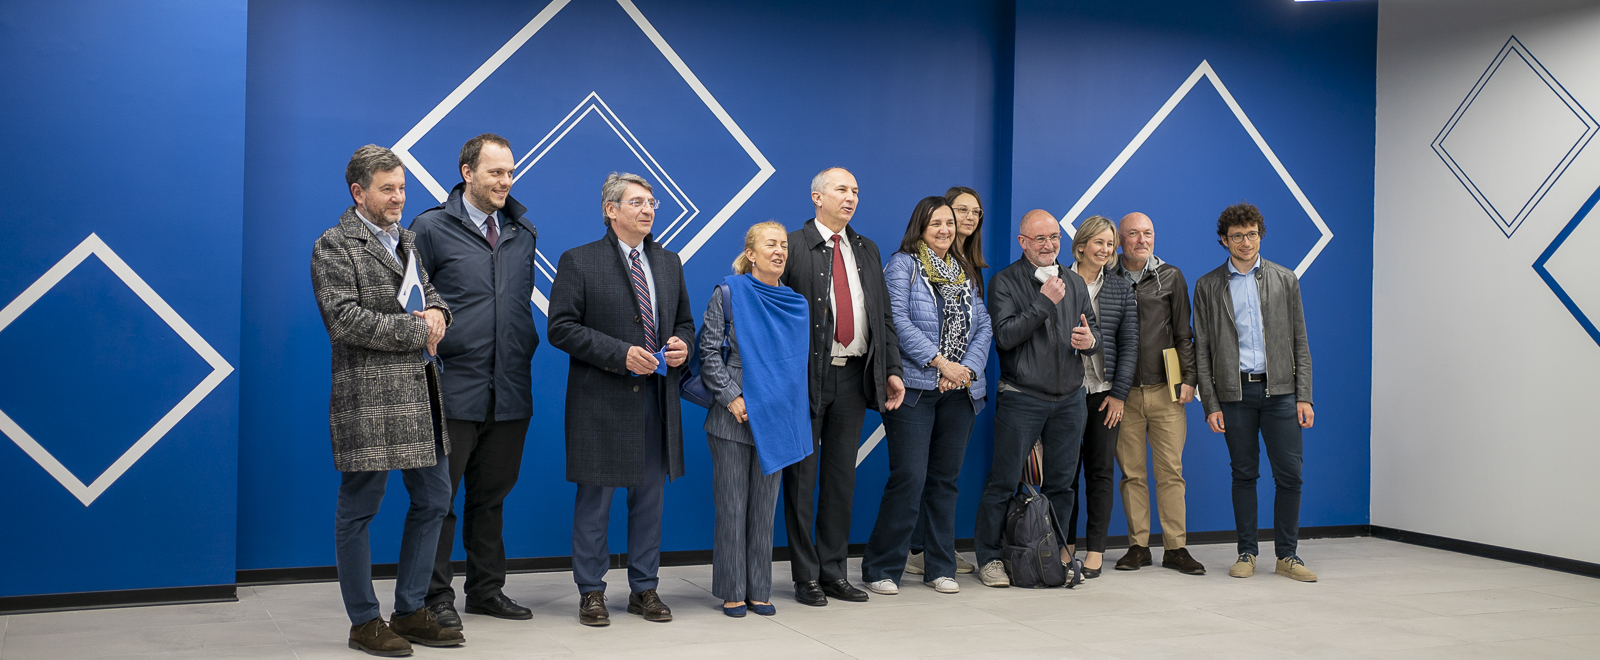 Foto di gruppo davanti al muro della mensa alla presenza del rettore, del sindaco, del direttore generale